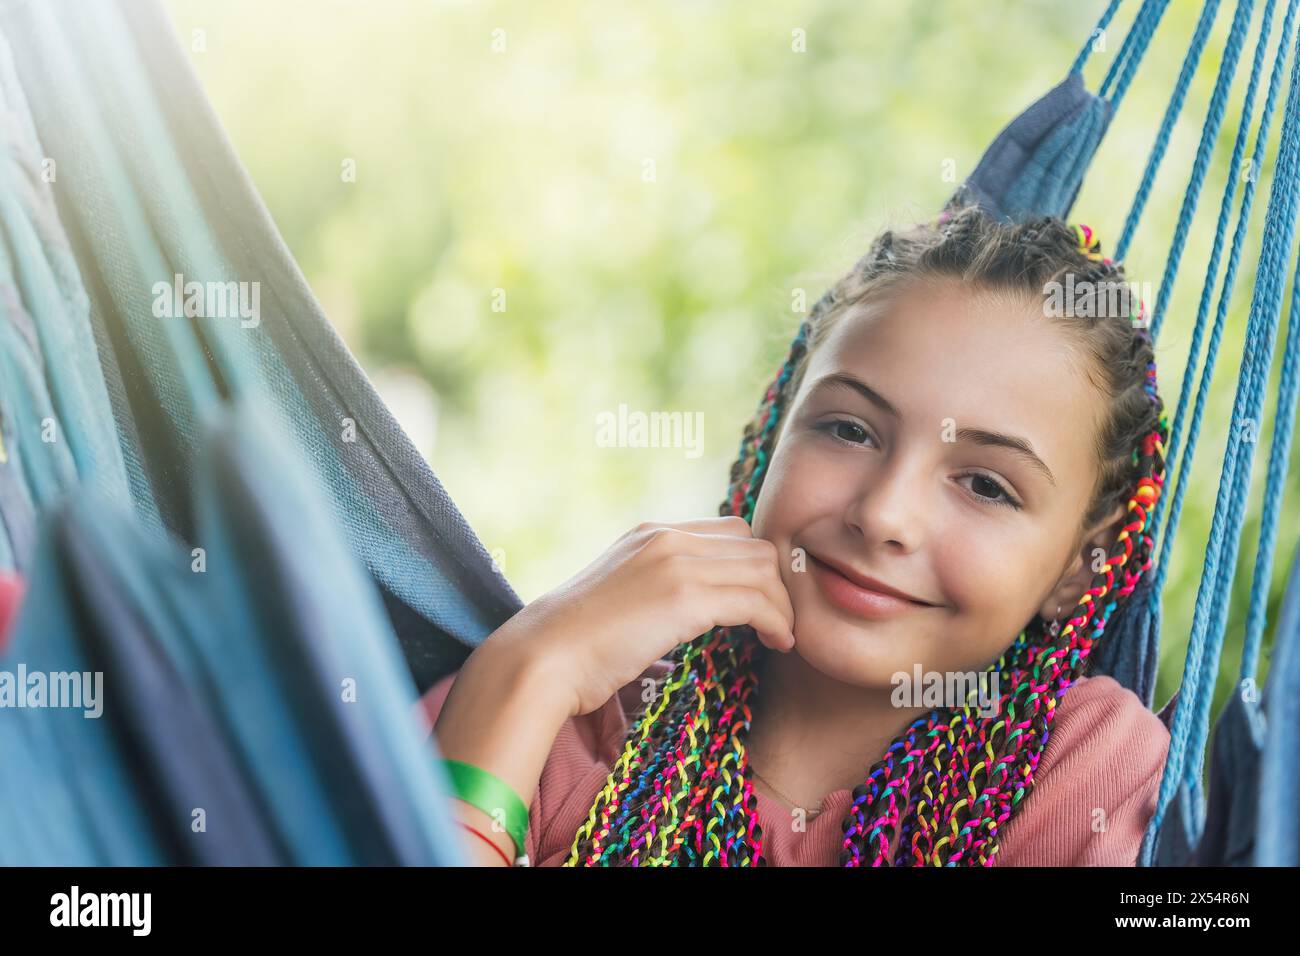 Gros plan portrait de jeune fille souriante avec des tresses colorées dans ses cheveux posant sur un hamac bleu. Horizontalement. Banque D'Images